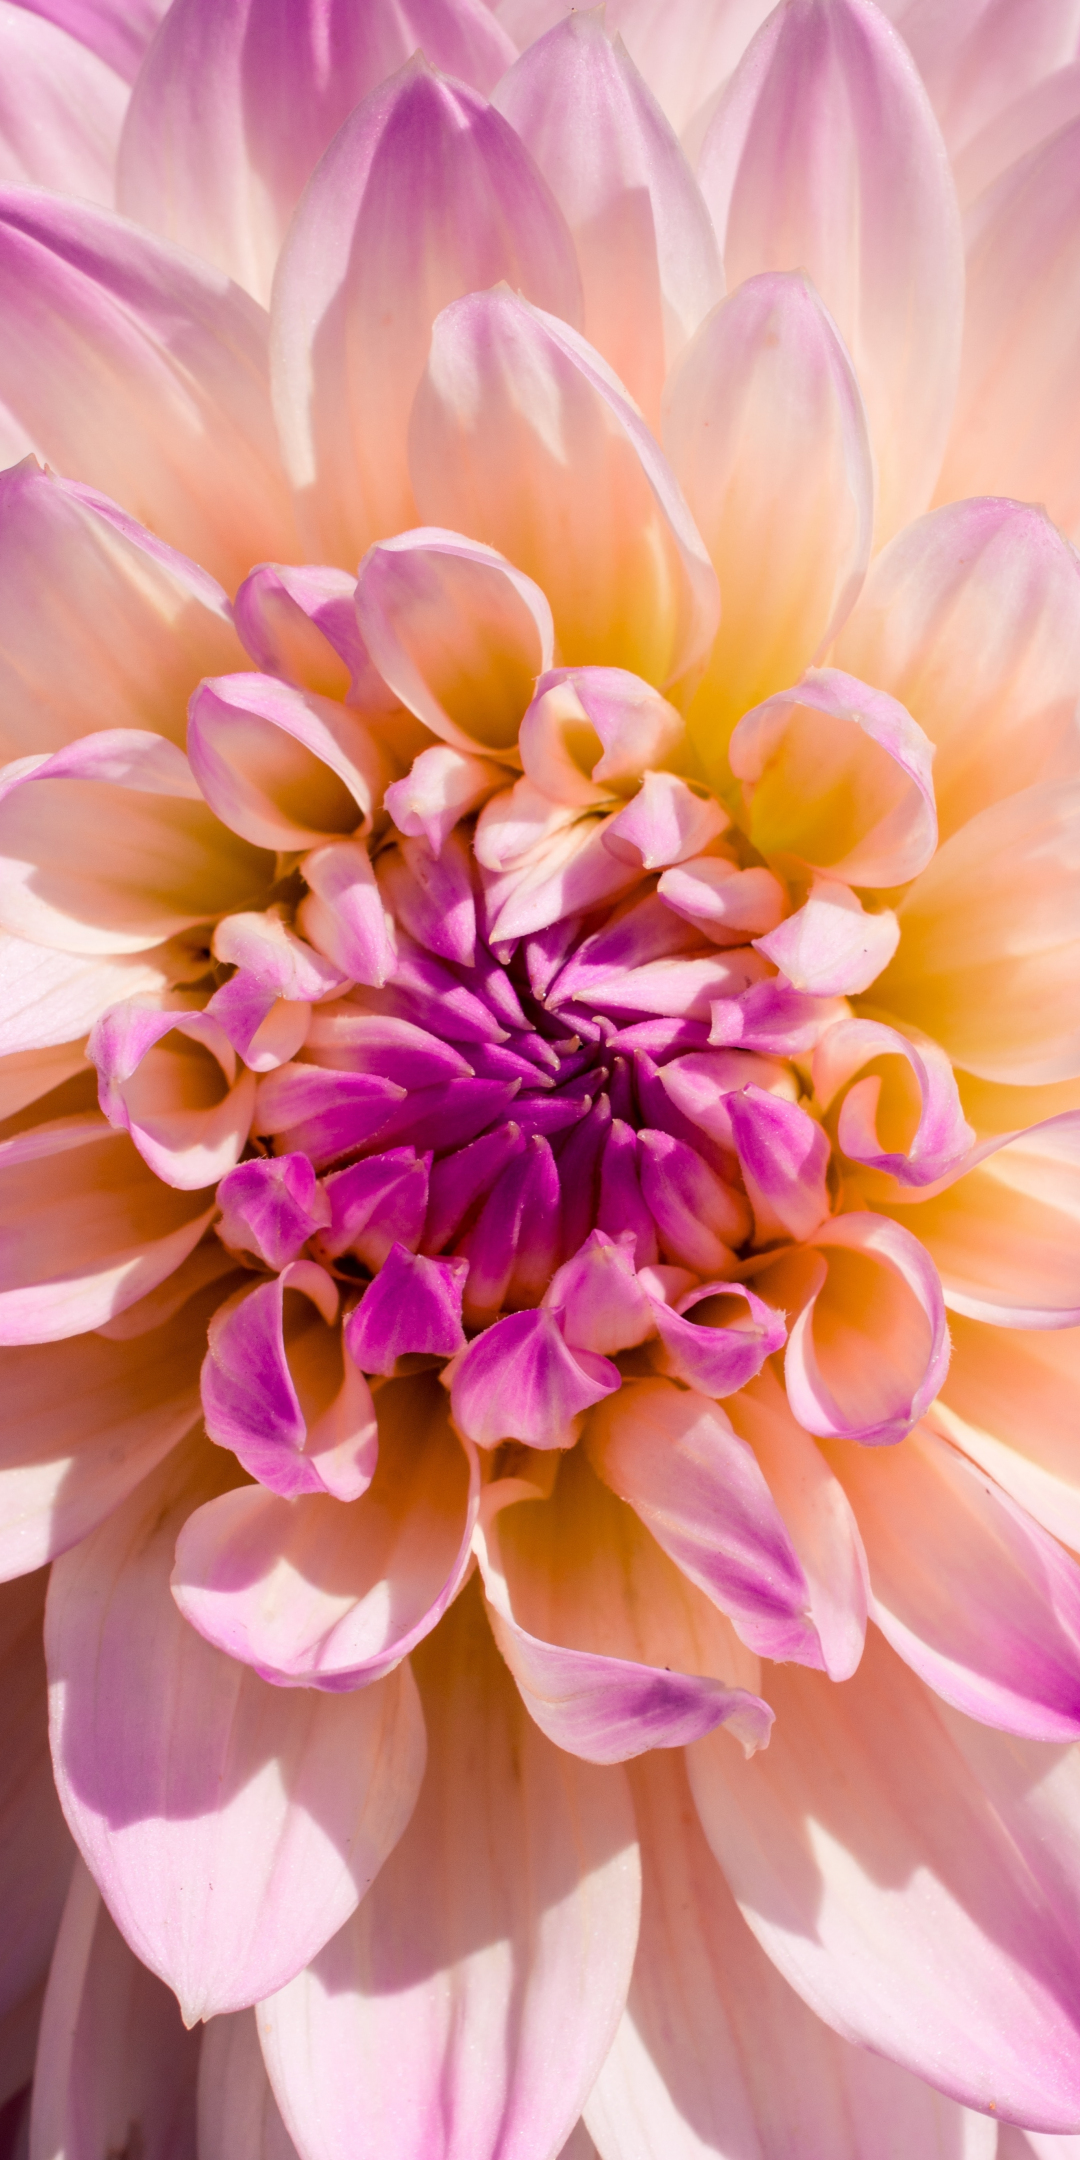 Light pink flower, close up, 1080x2160 wallpaper